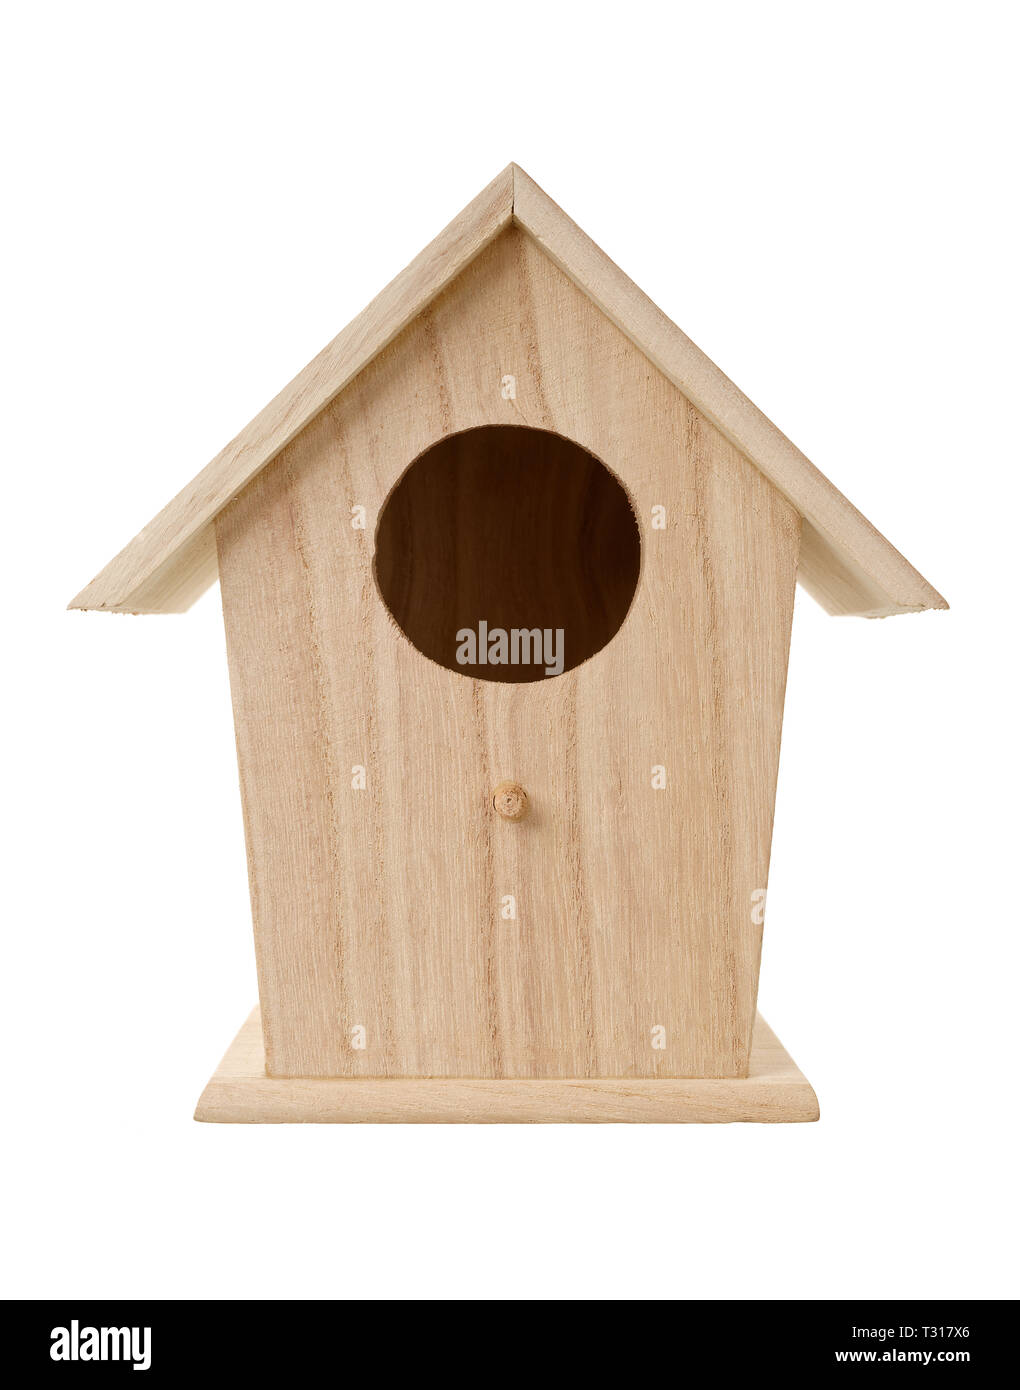 Isolierte Objekte: handgefertigten Holzmöbeln vogel Nistkasten, Bird House, auf weißem Hintergrund Stockfoto